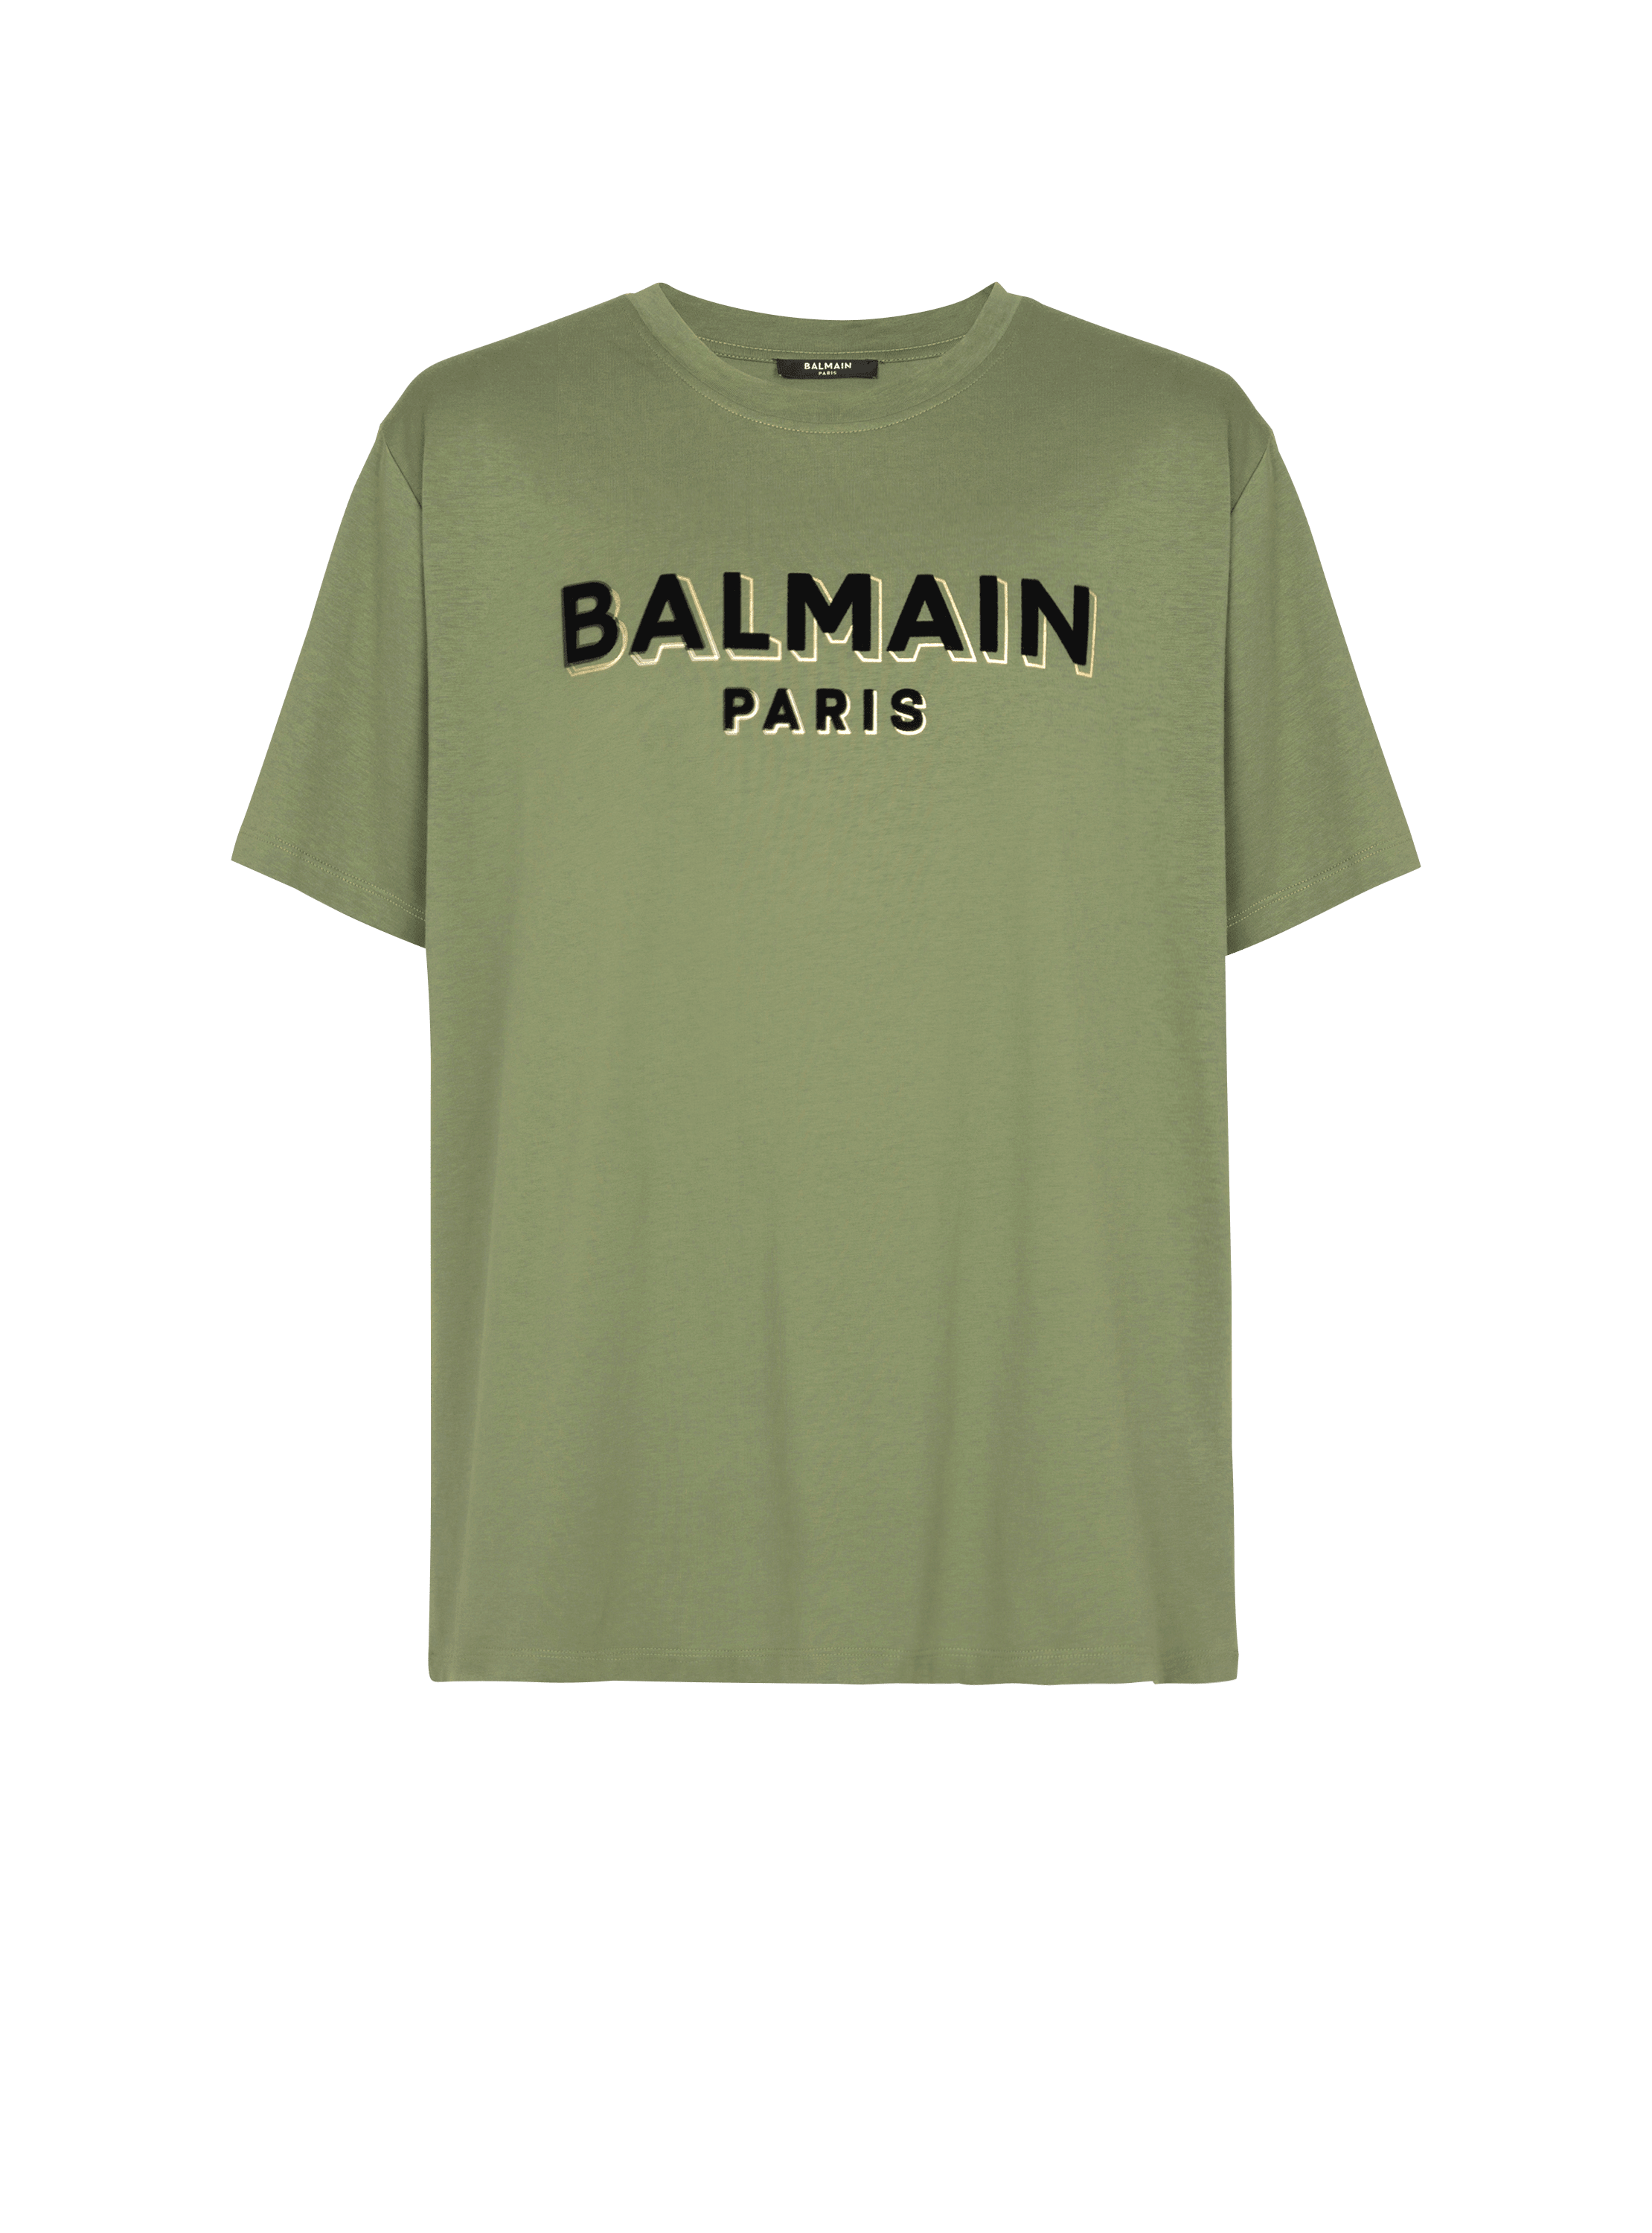 Camiseta con el logotipo de Balmain Paris serigrafiado